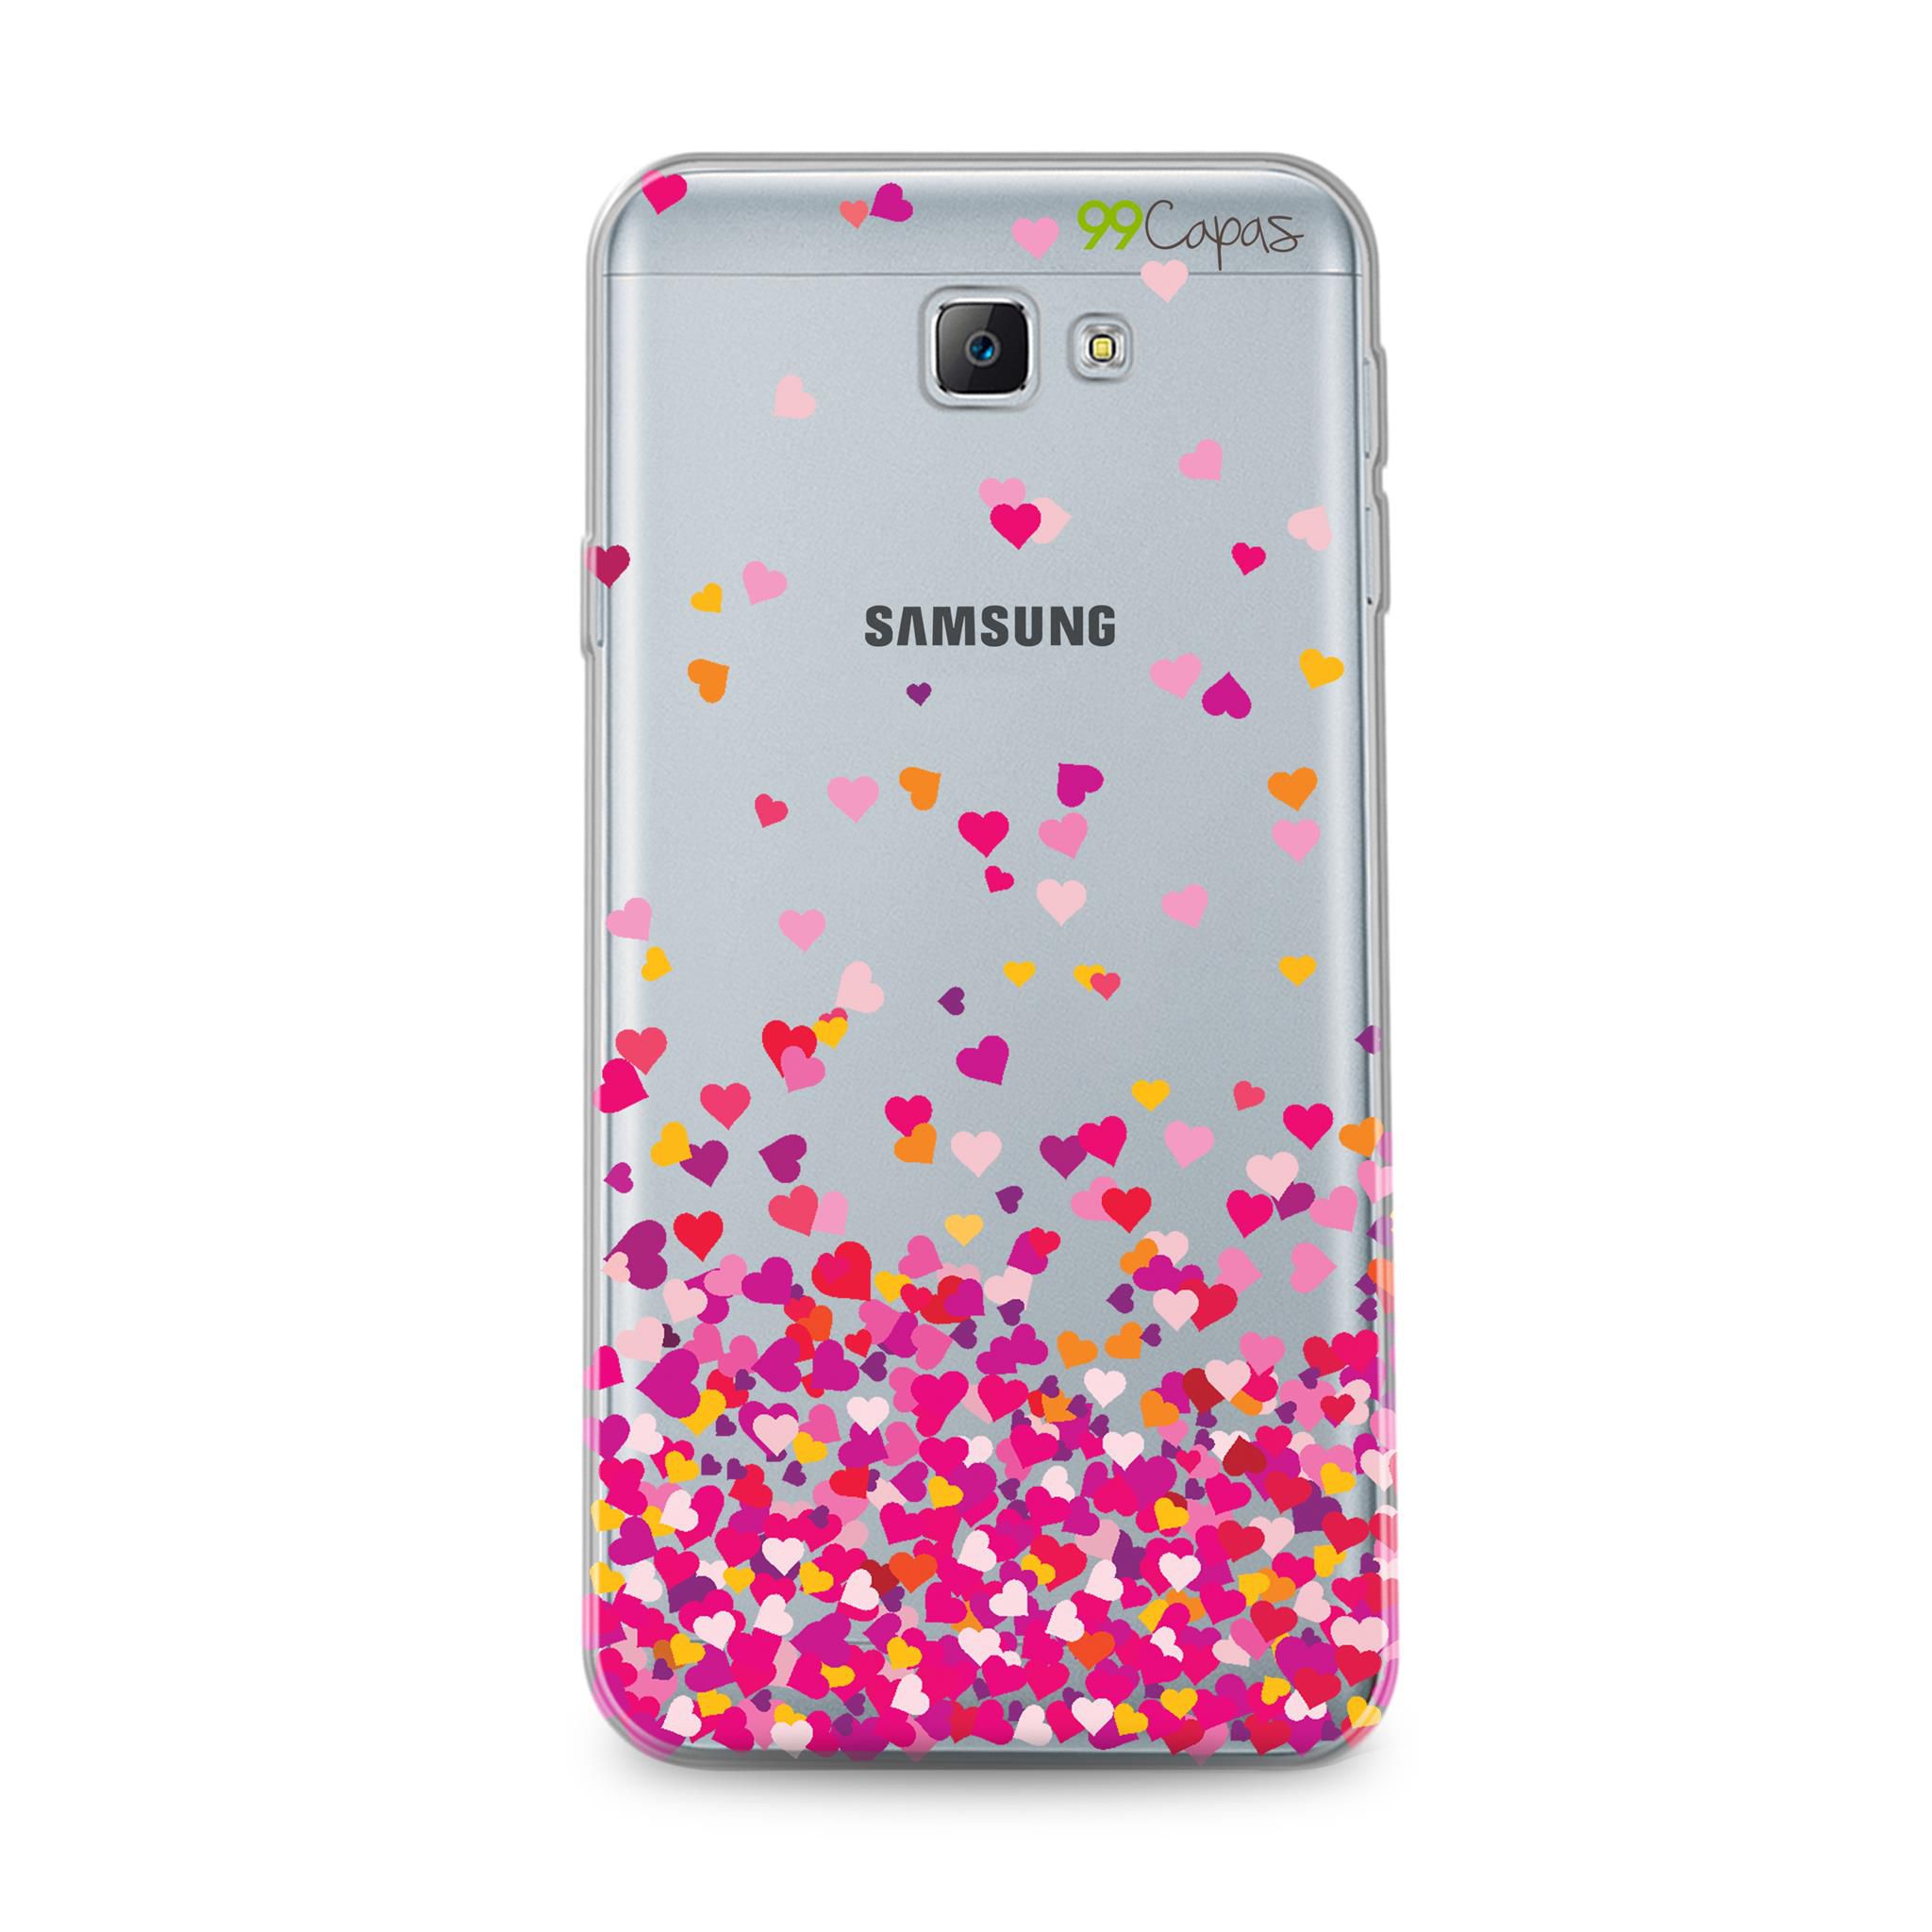 Capa Case Capinha para Samsung Galaxy J5 - Corações Rosa - 99capas -  Capinhas e cases personalizadas para celular